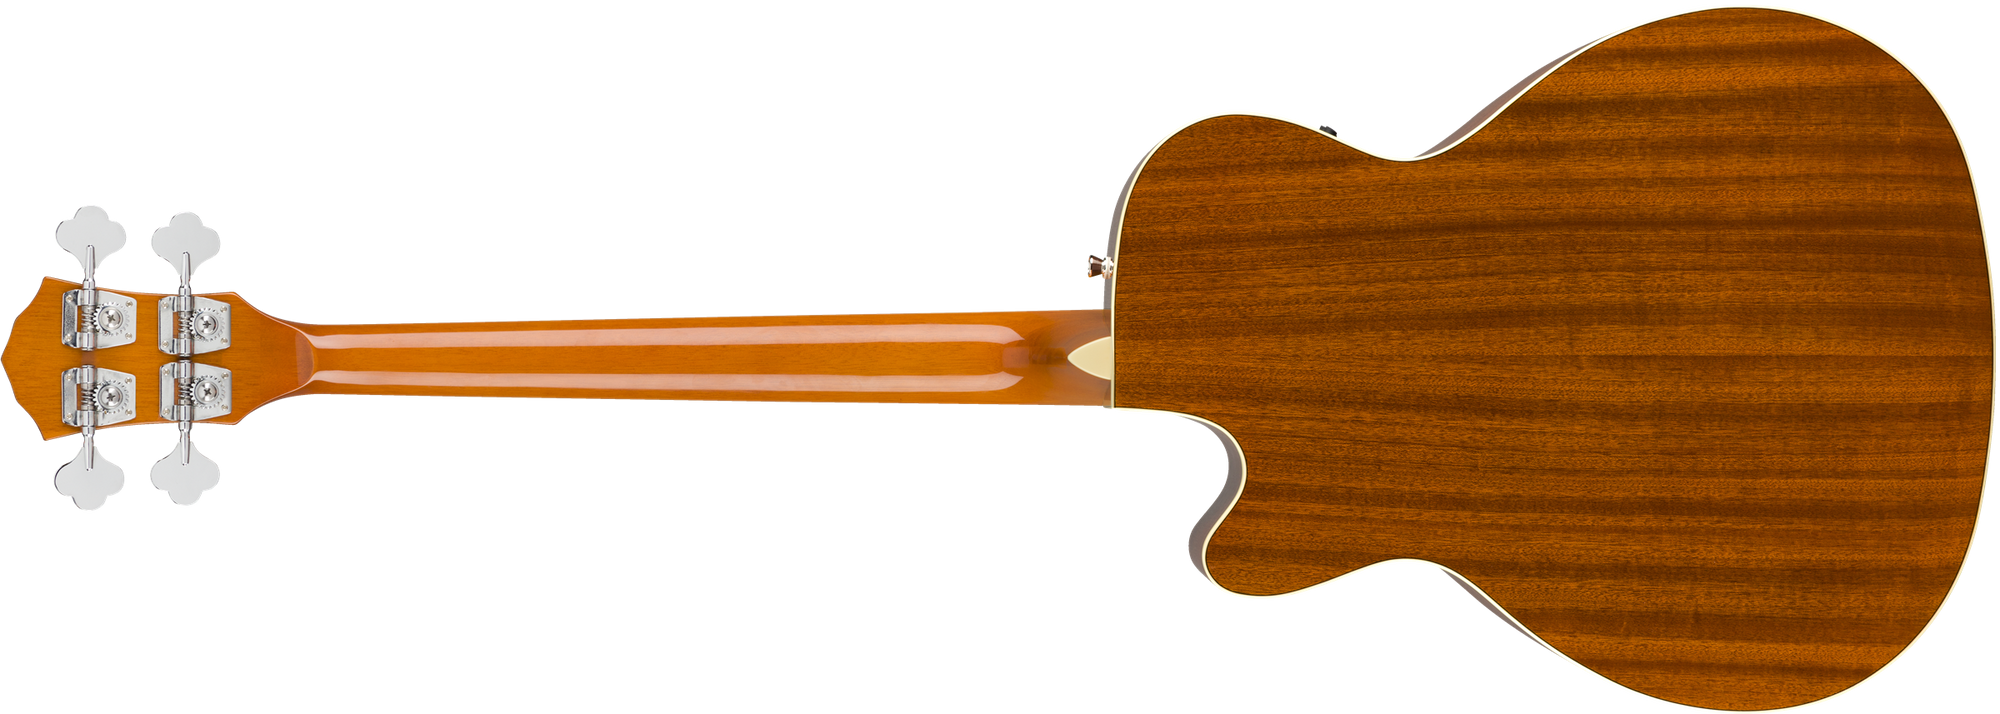 FA-450CE Bass, Laurel Fingerboard, 3 Color Sunburst